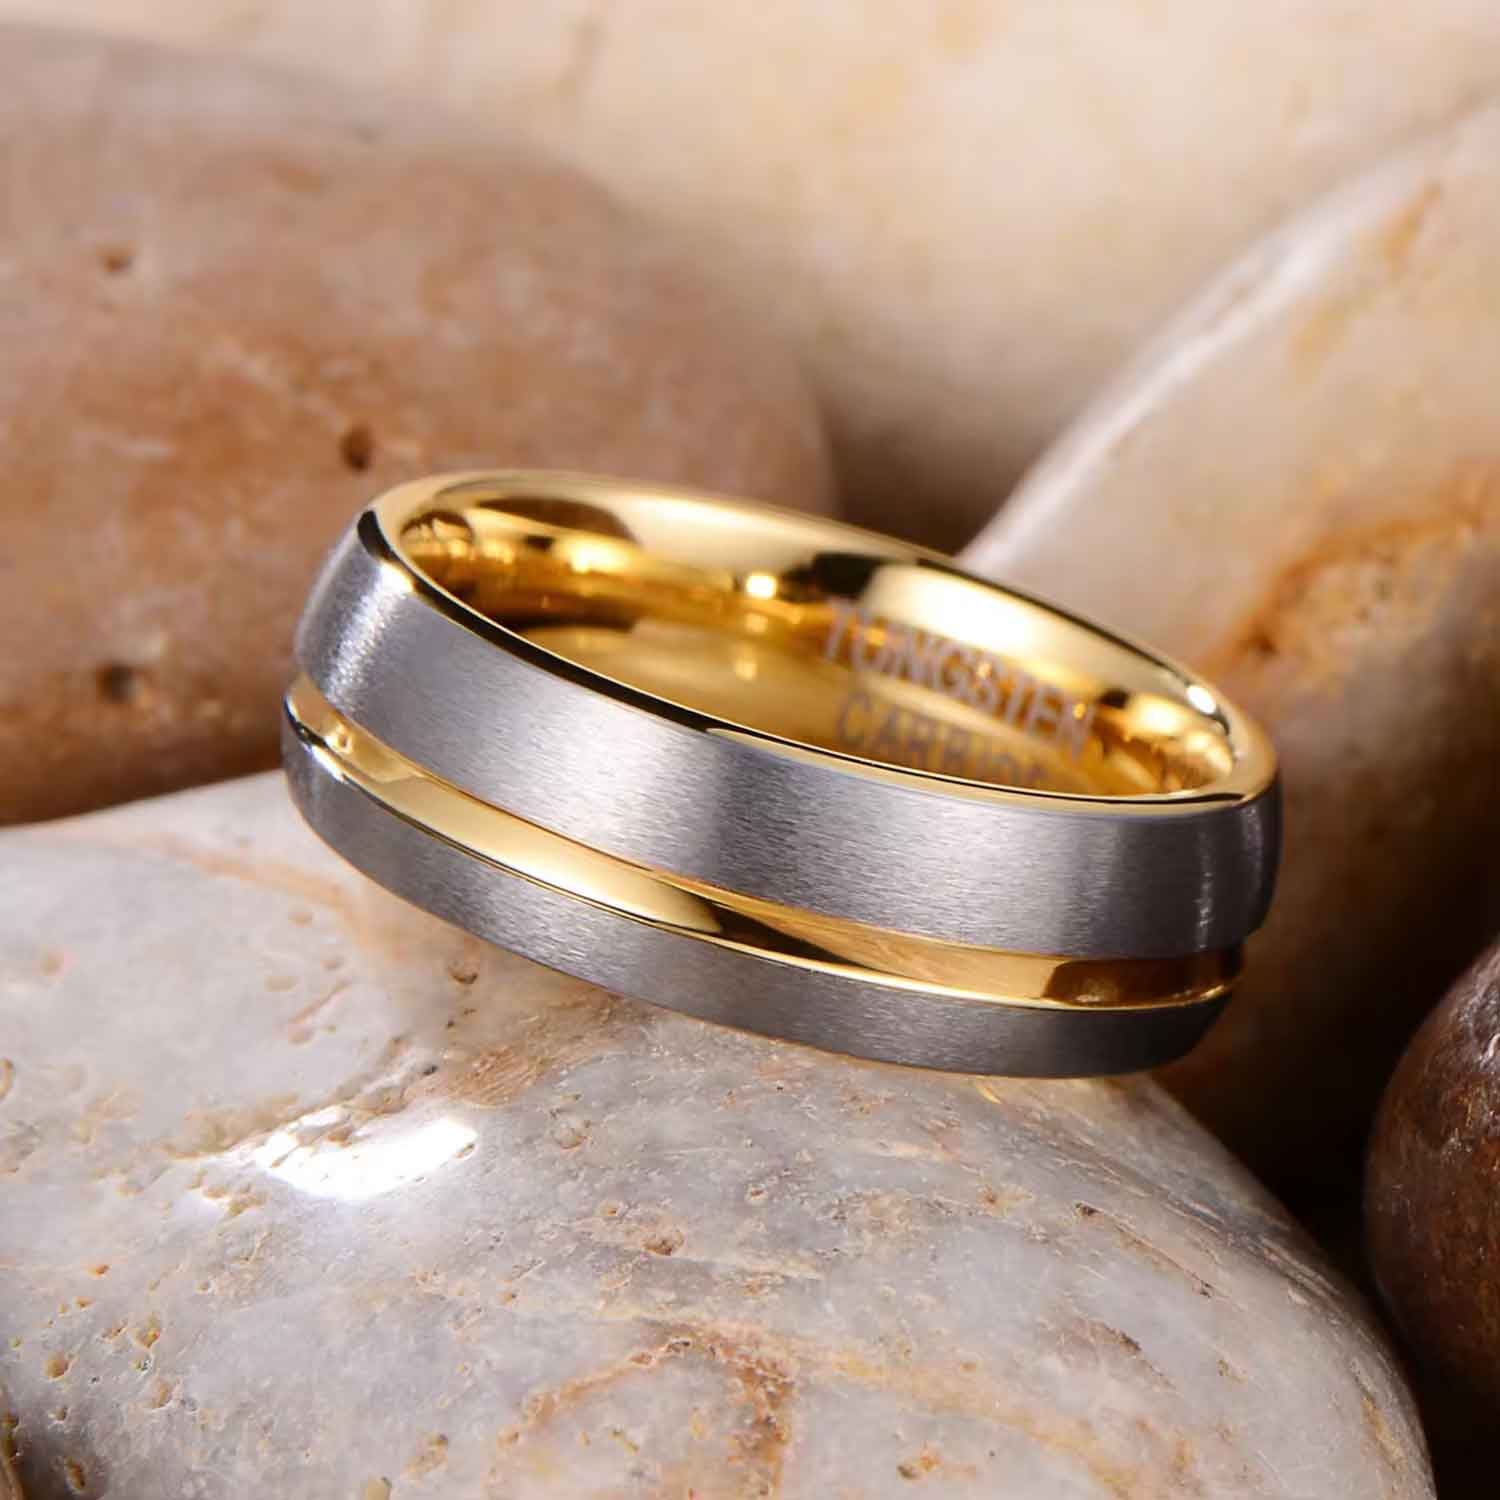 Tungsten carbide wedding ring